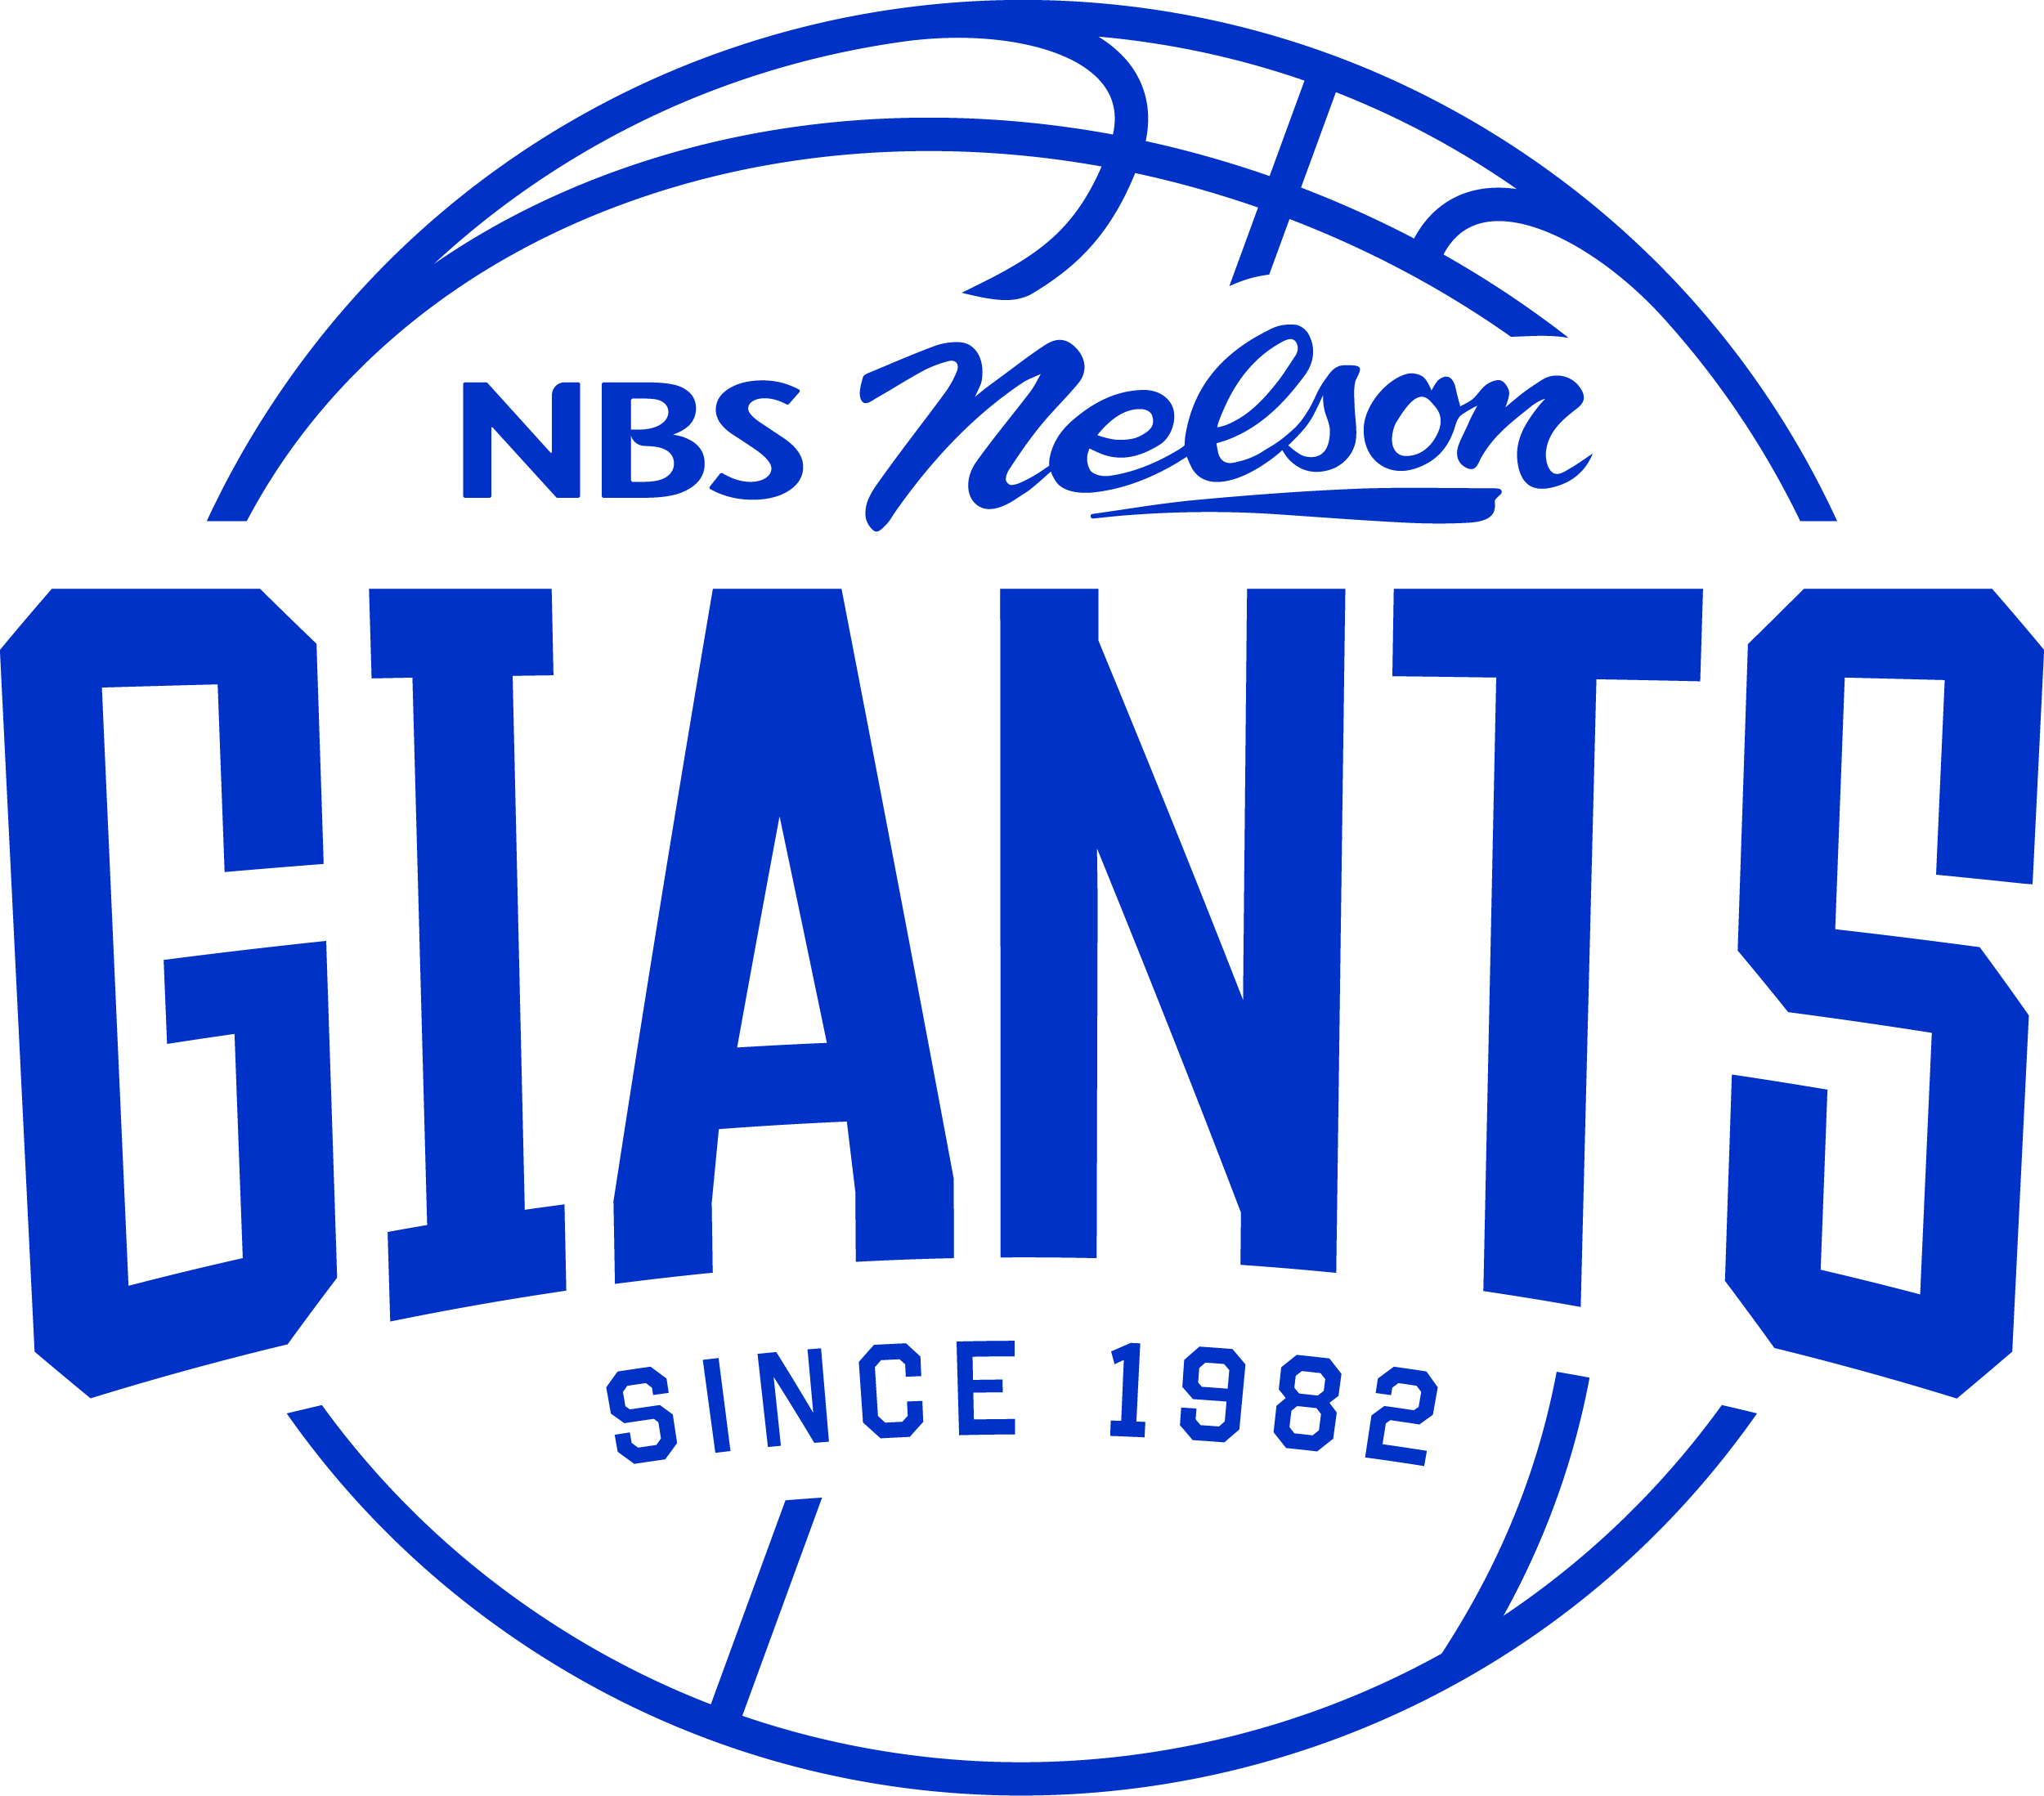 NBS Nelson Giants logo